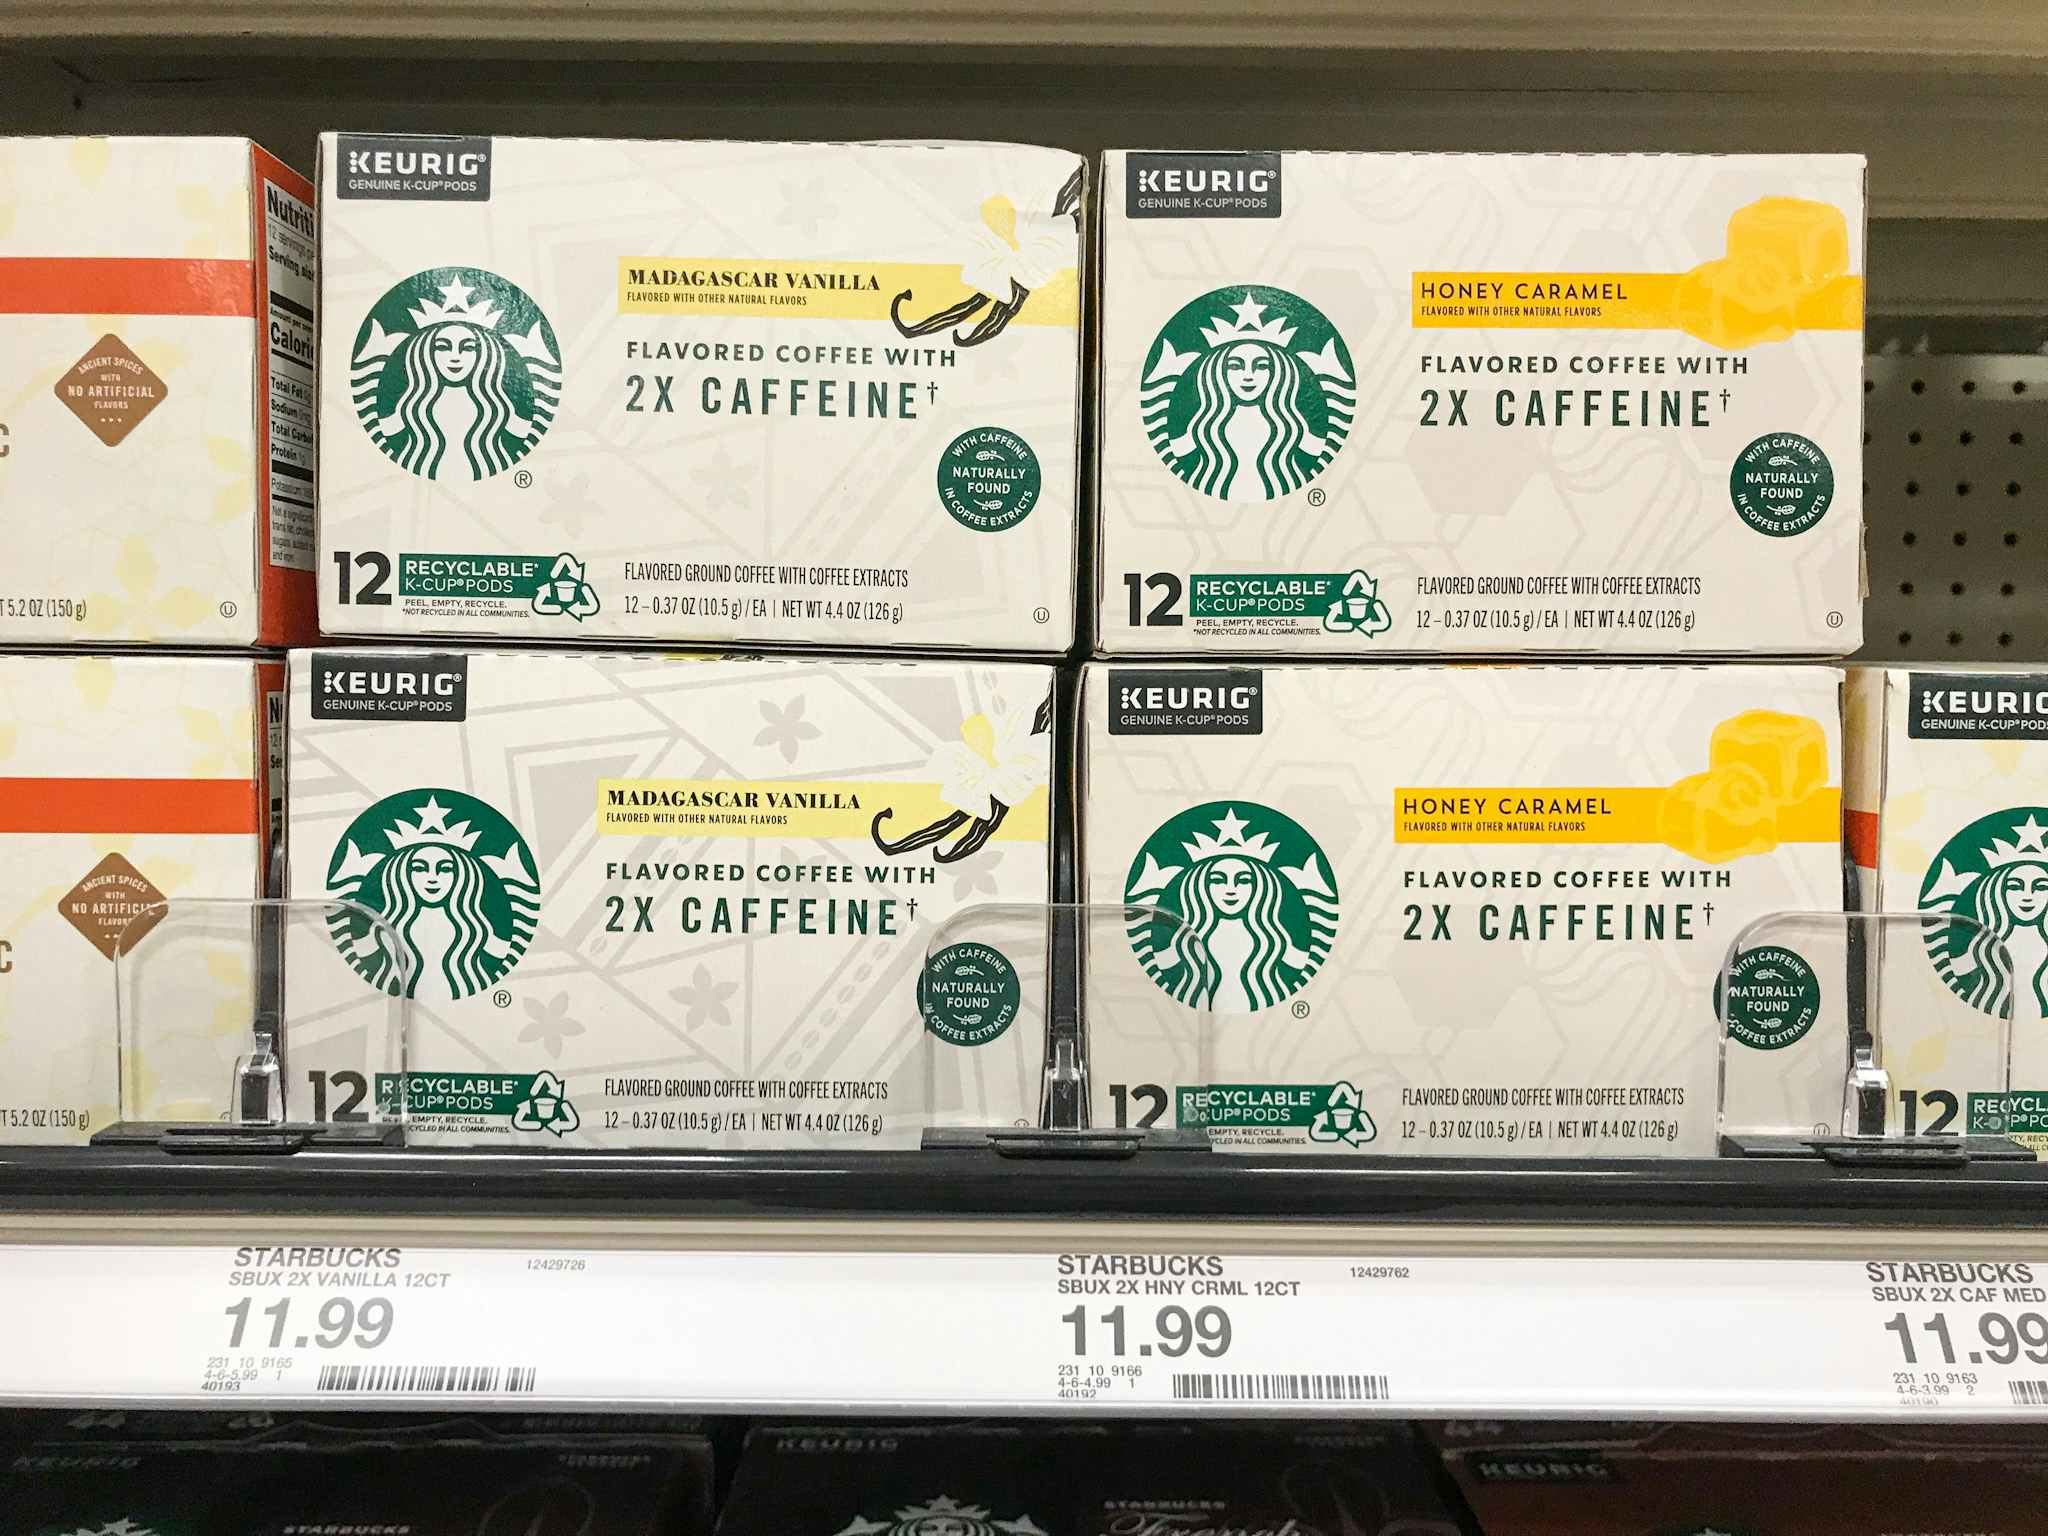 startbucks k-cup pods with 2x caffeine on a target shelf